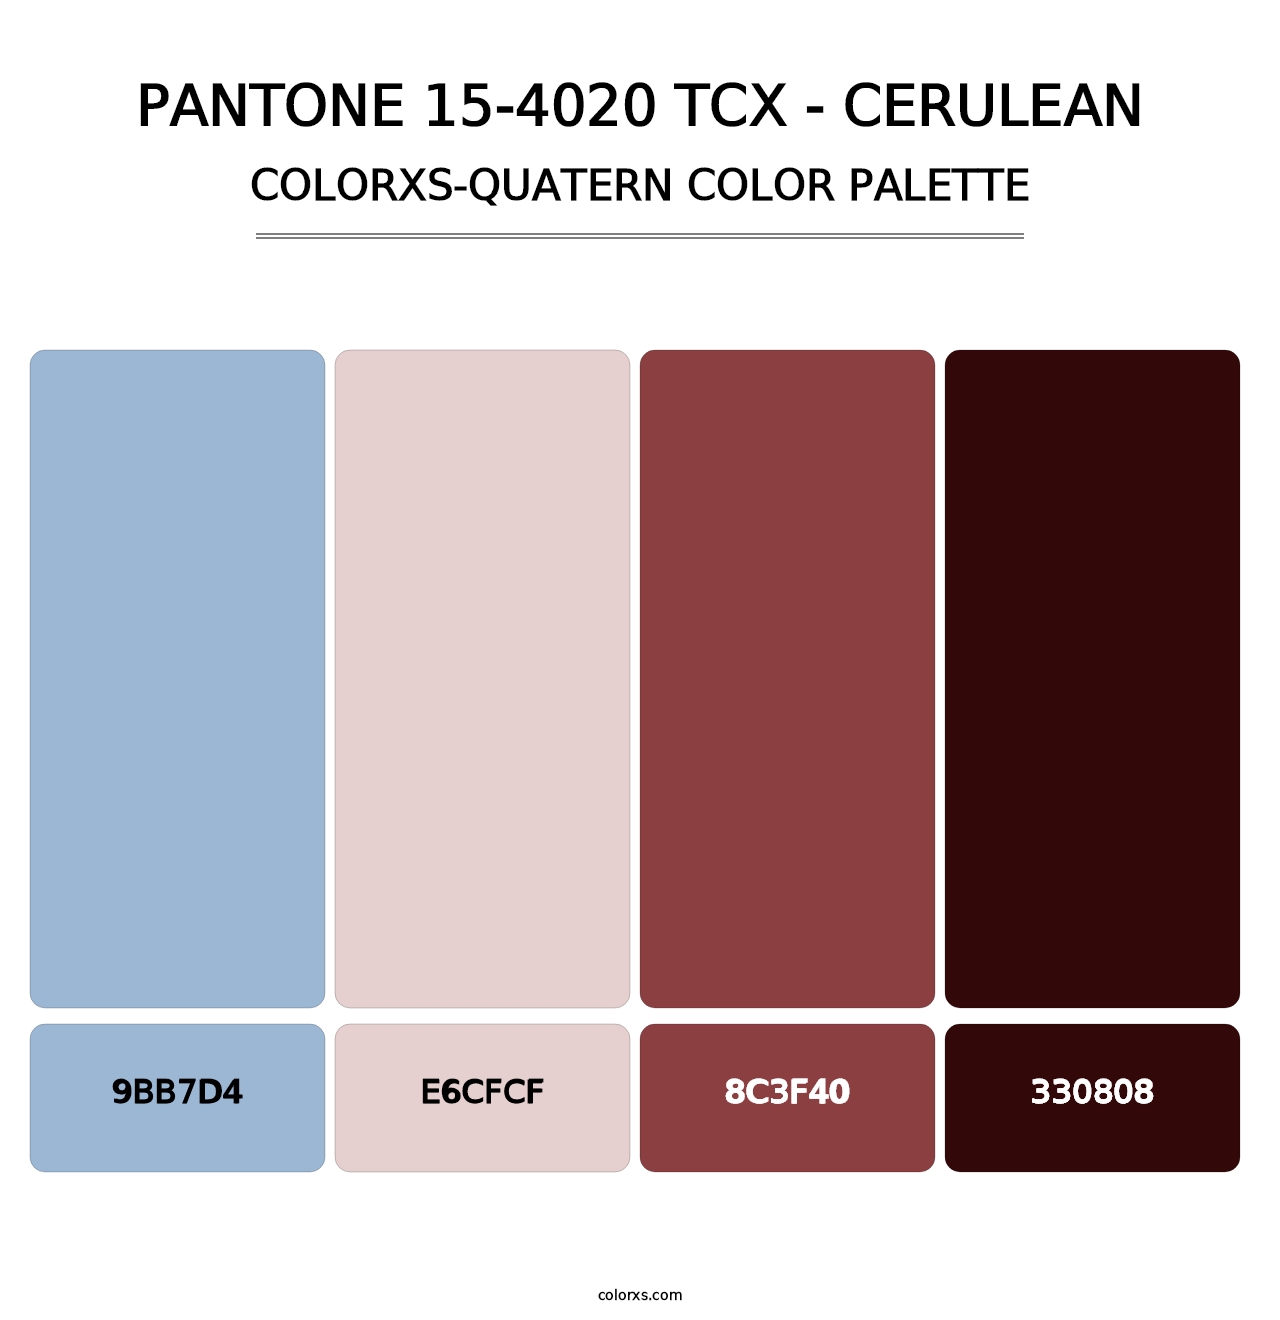 PANTONE 15-4020 TCX - Cerulean - Colorxs Quatern Palette